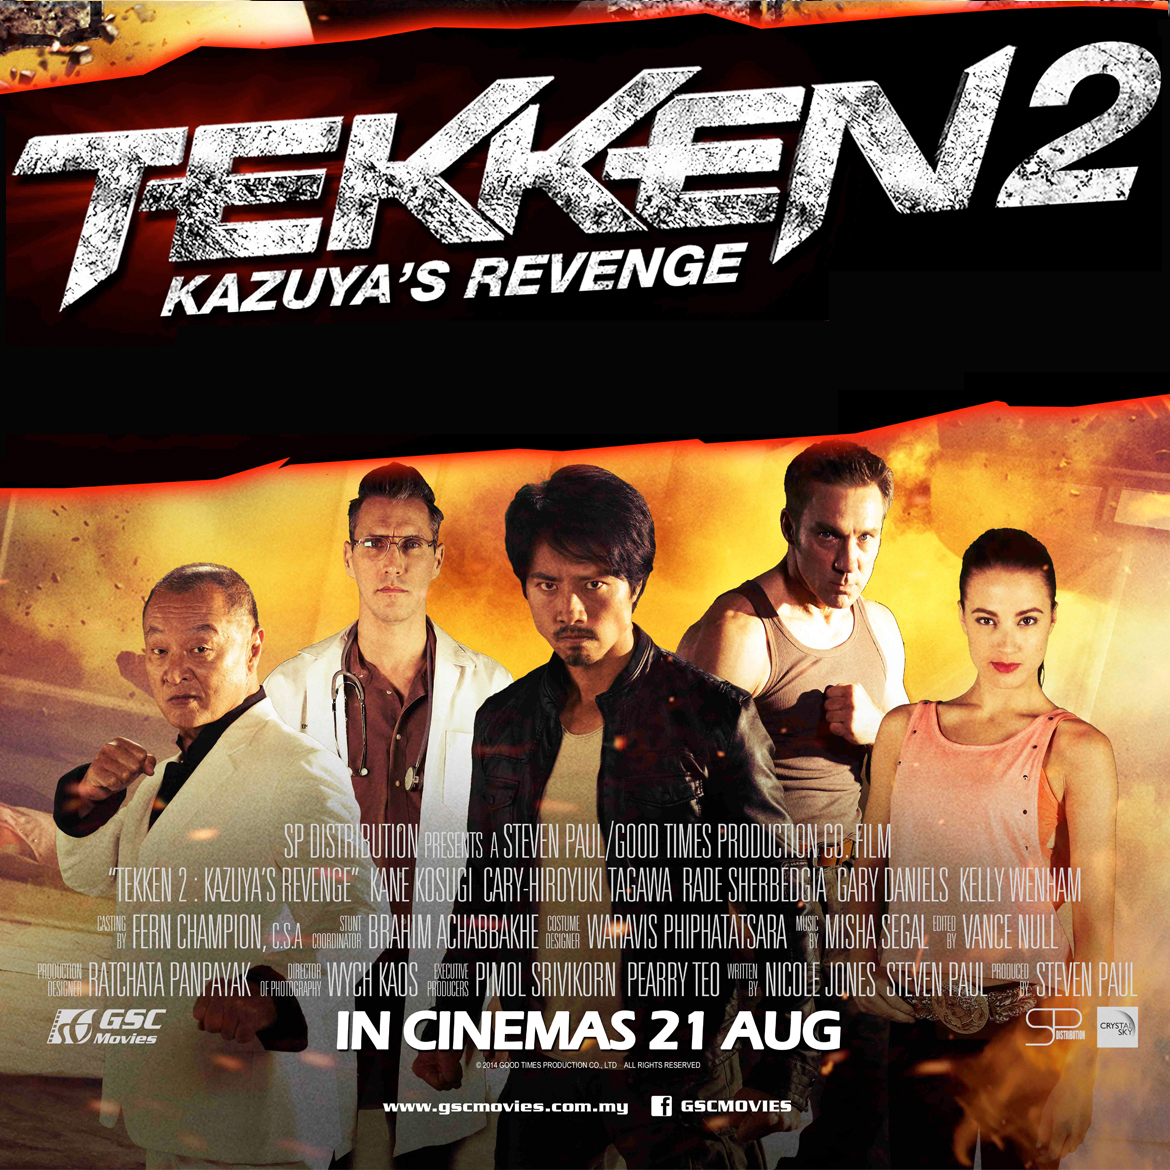 2014 TEKKEN: Kazuya's Revenge